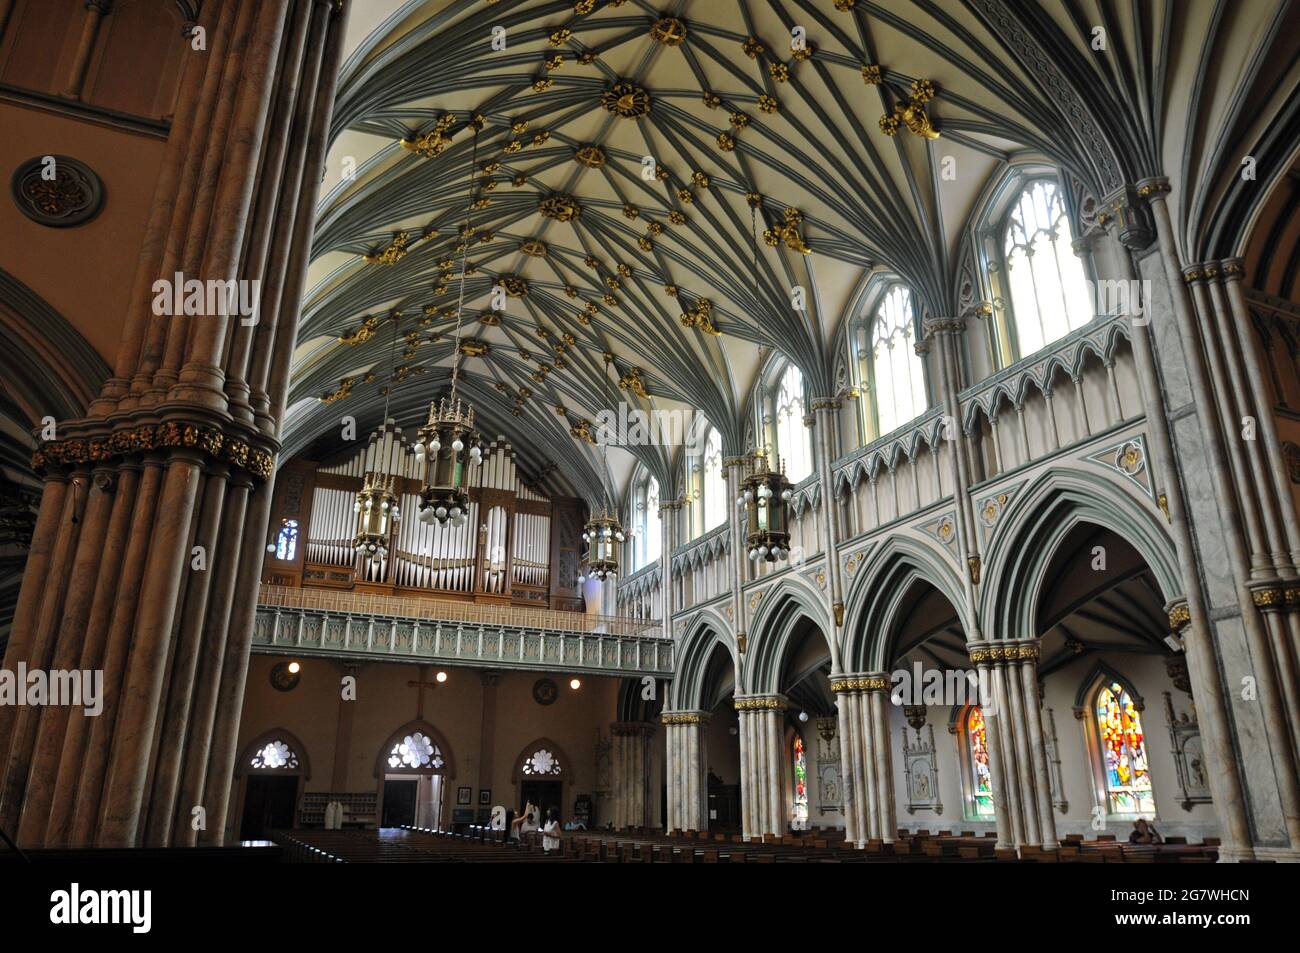 Das Innere der historischen St. Dunstan's Basilica in der Innenstadt von Charlottetown, Prince Edward Island, zeigt die gewölbte Decke und den Orgelloft. Stockfoto